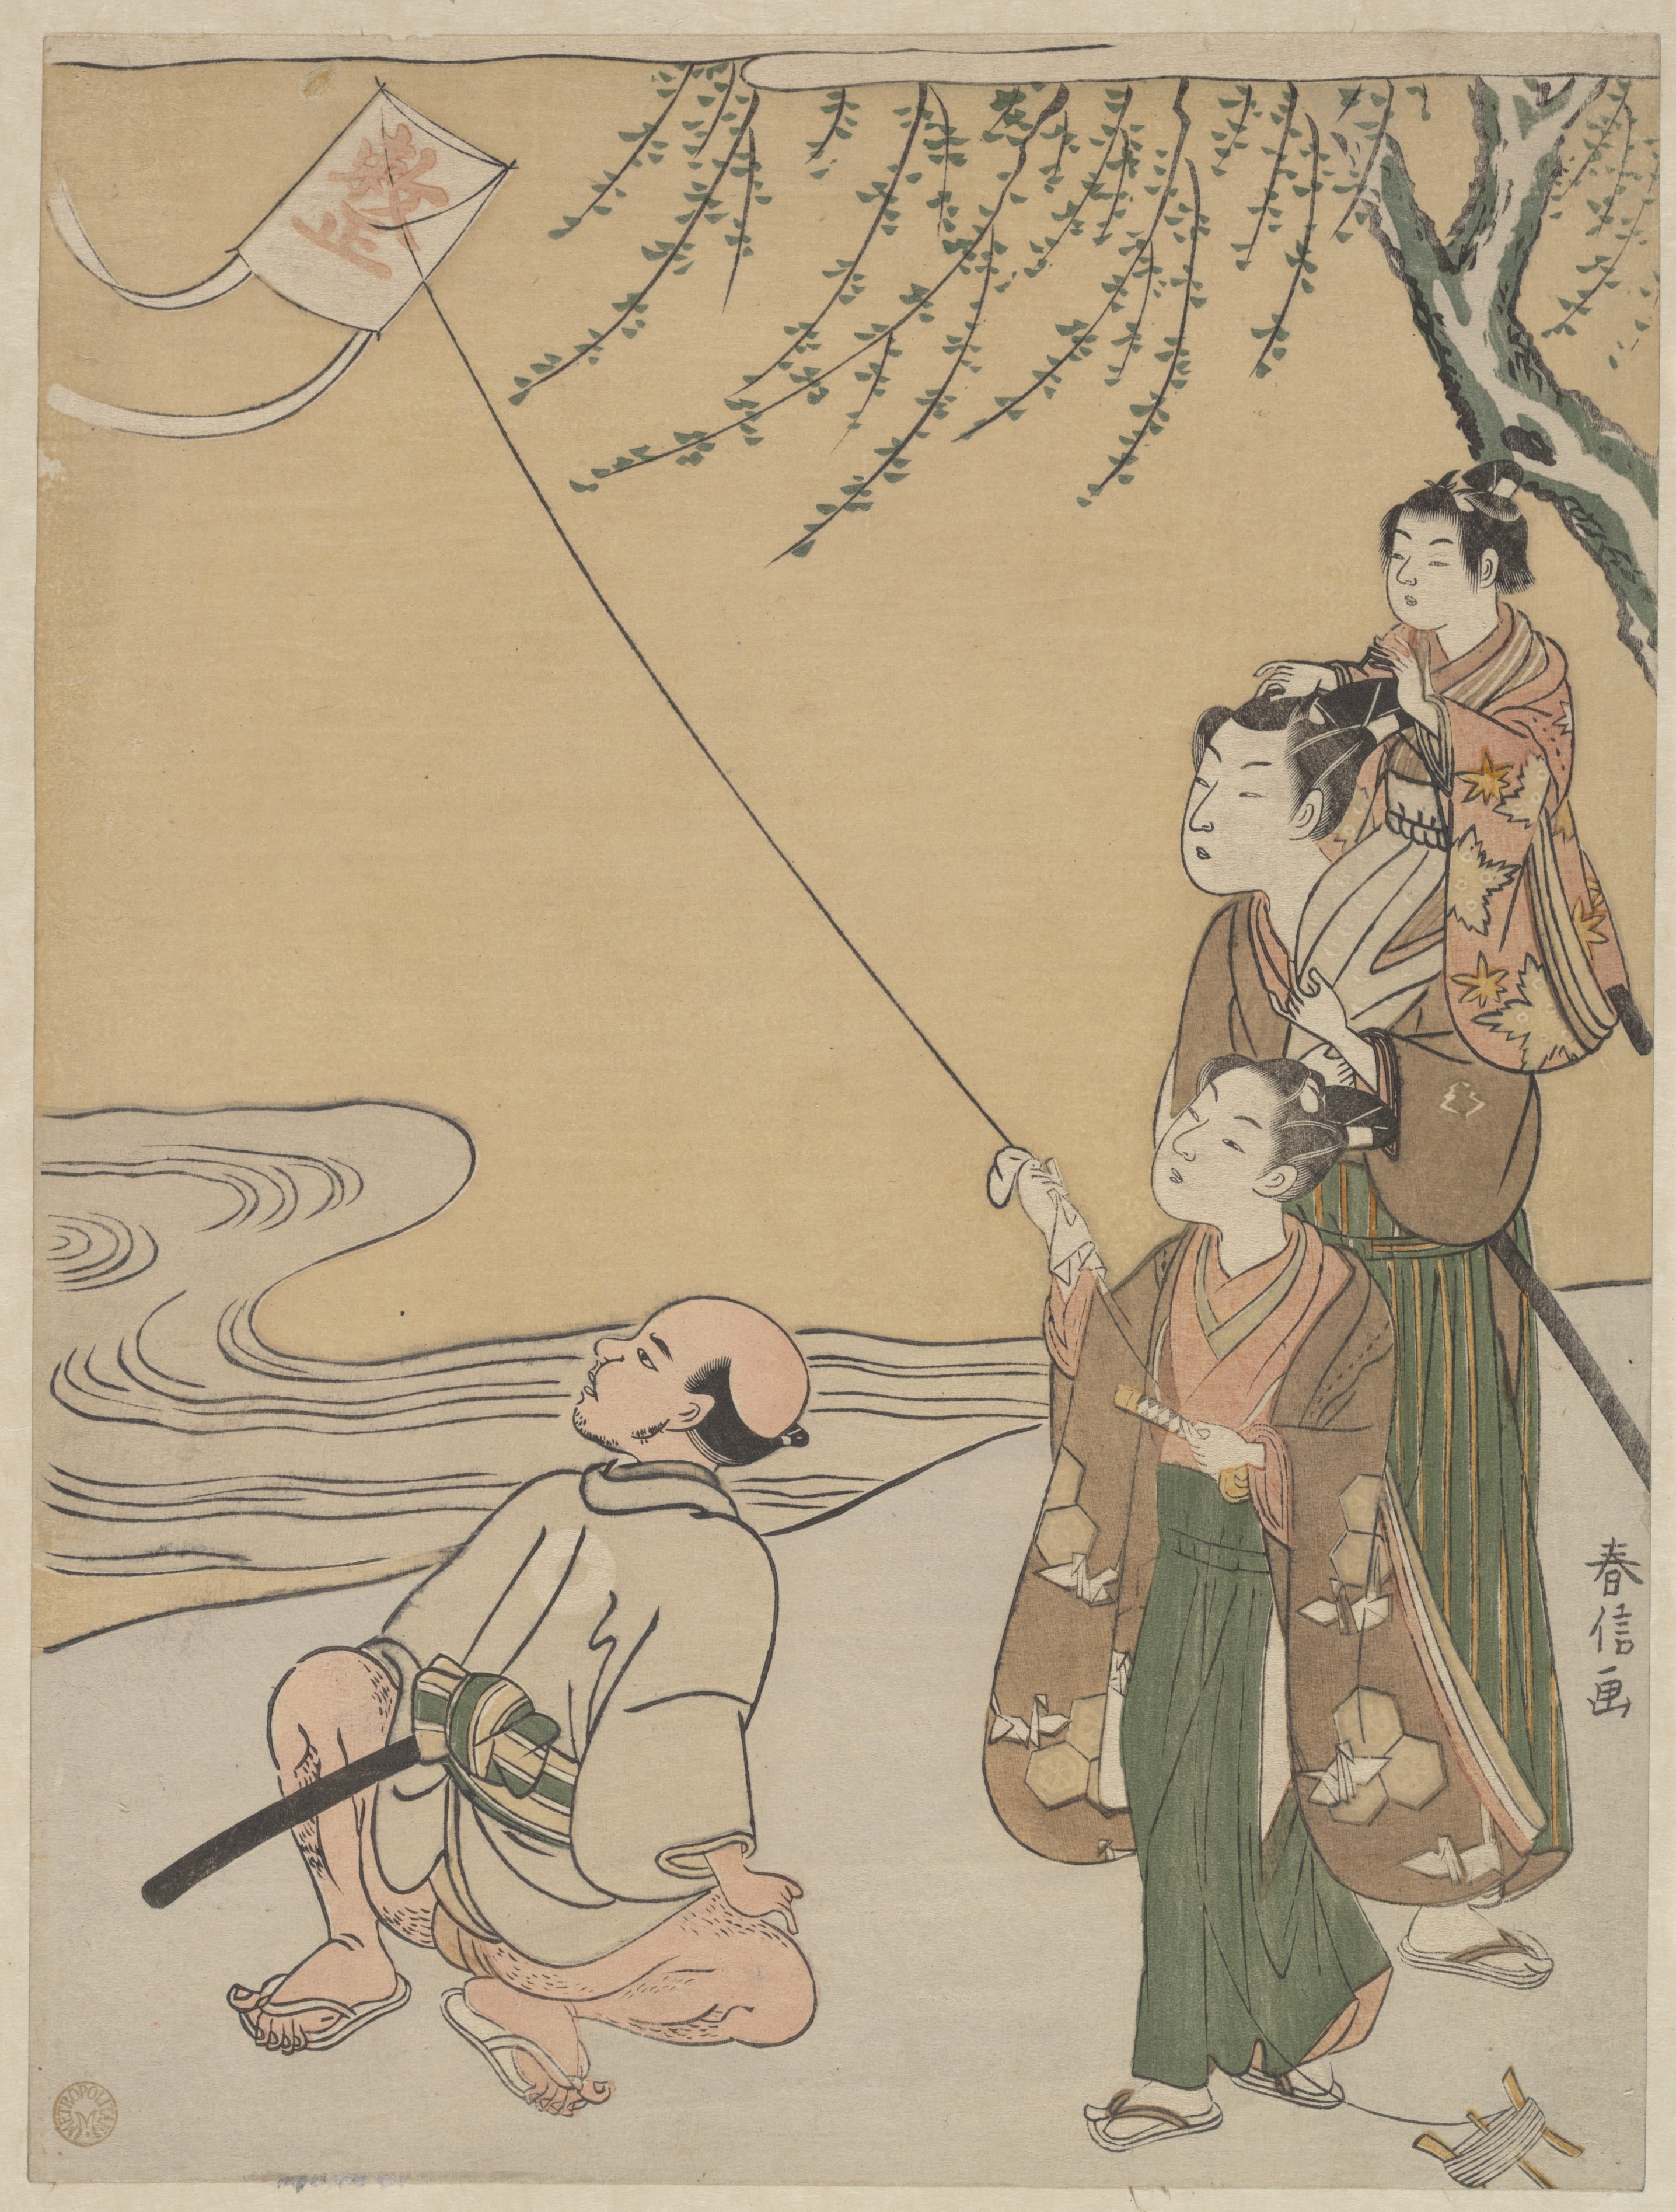 Sárkányröptetés by Suzuki Harunobu - 1766 - 27.3 x 20.6 cm 